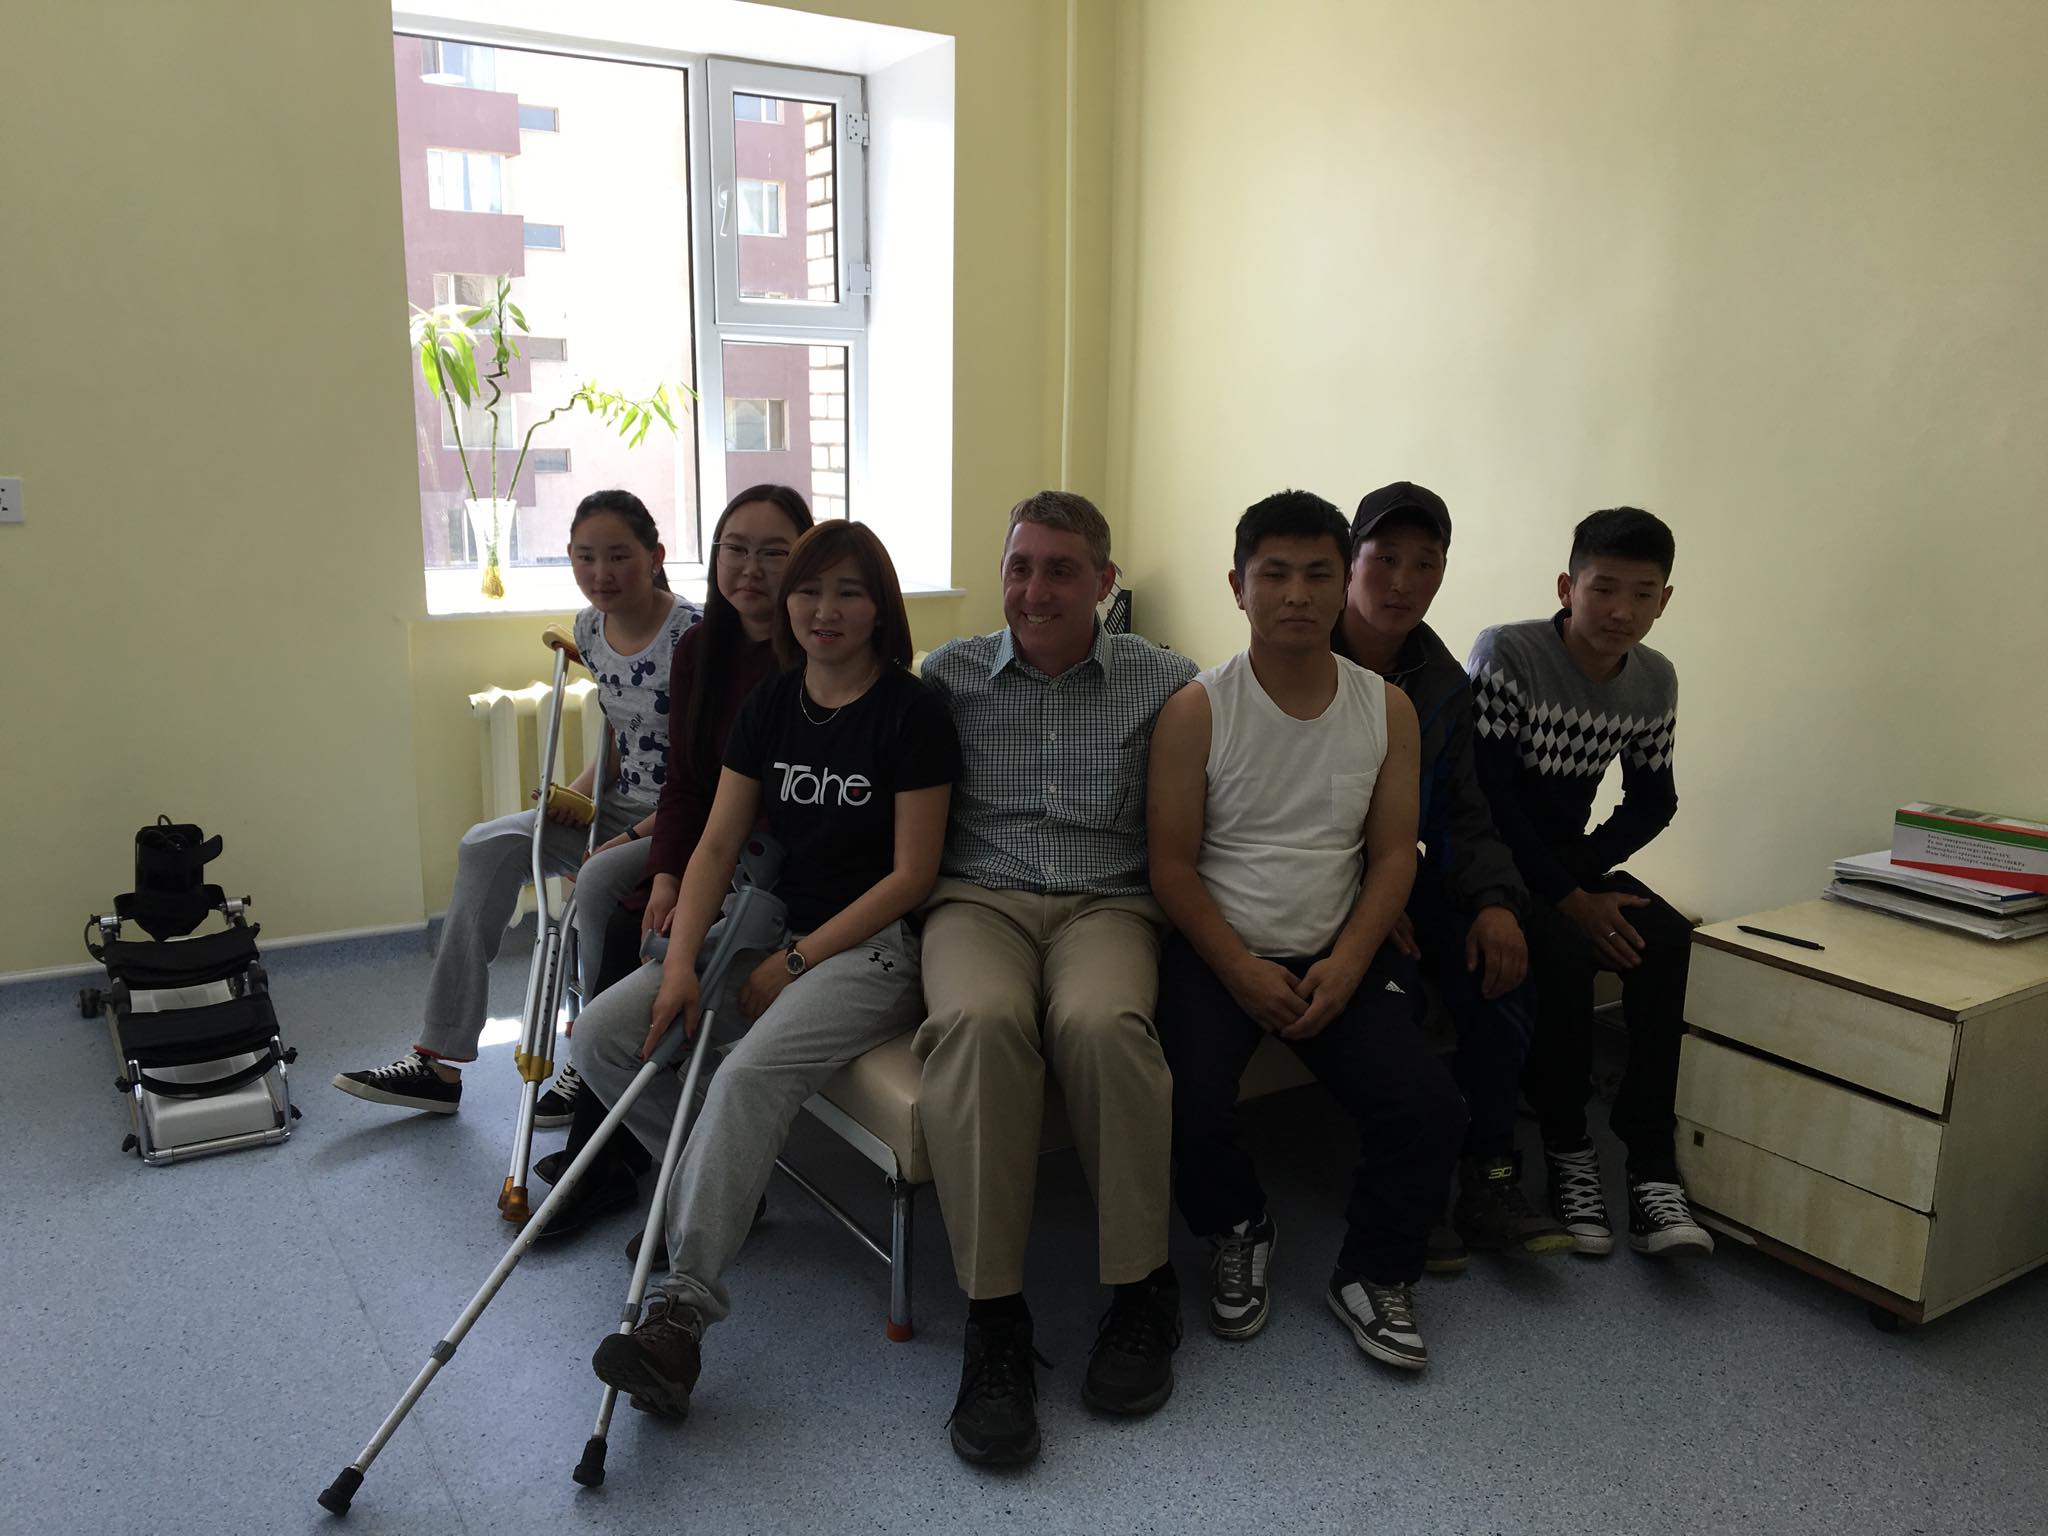 Америк эмчийн тусламжтайгаар Монголд анх удаа 5 өвчтөнд хиймэл хөл хийж өглөө